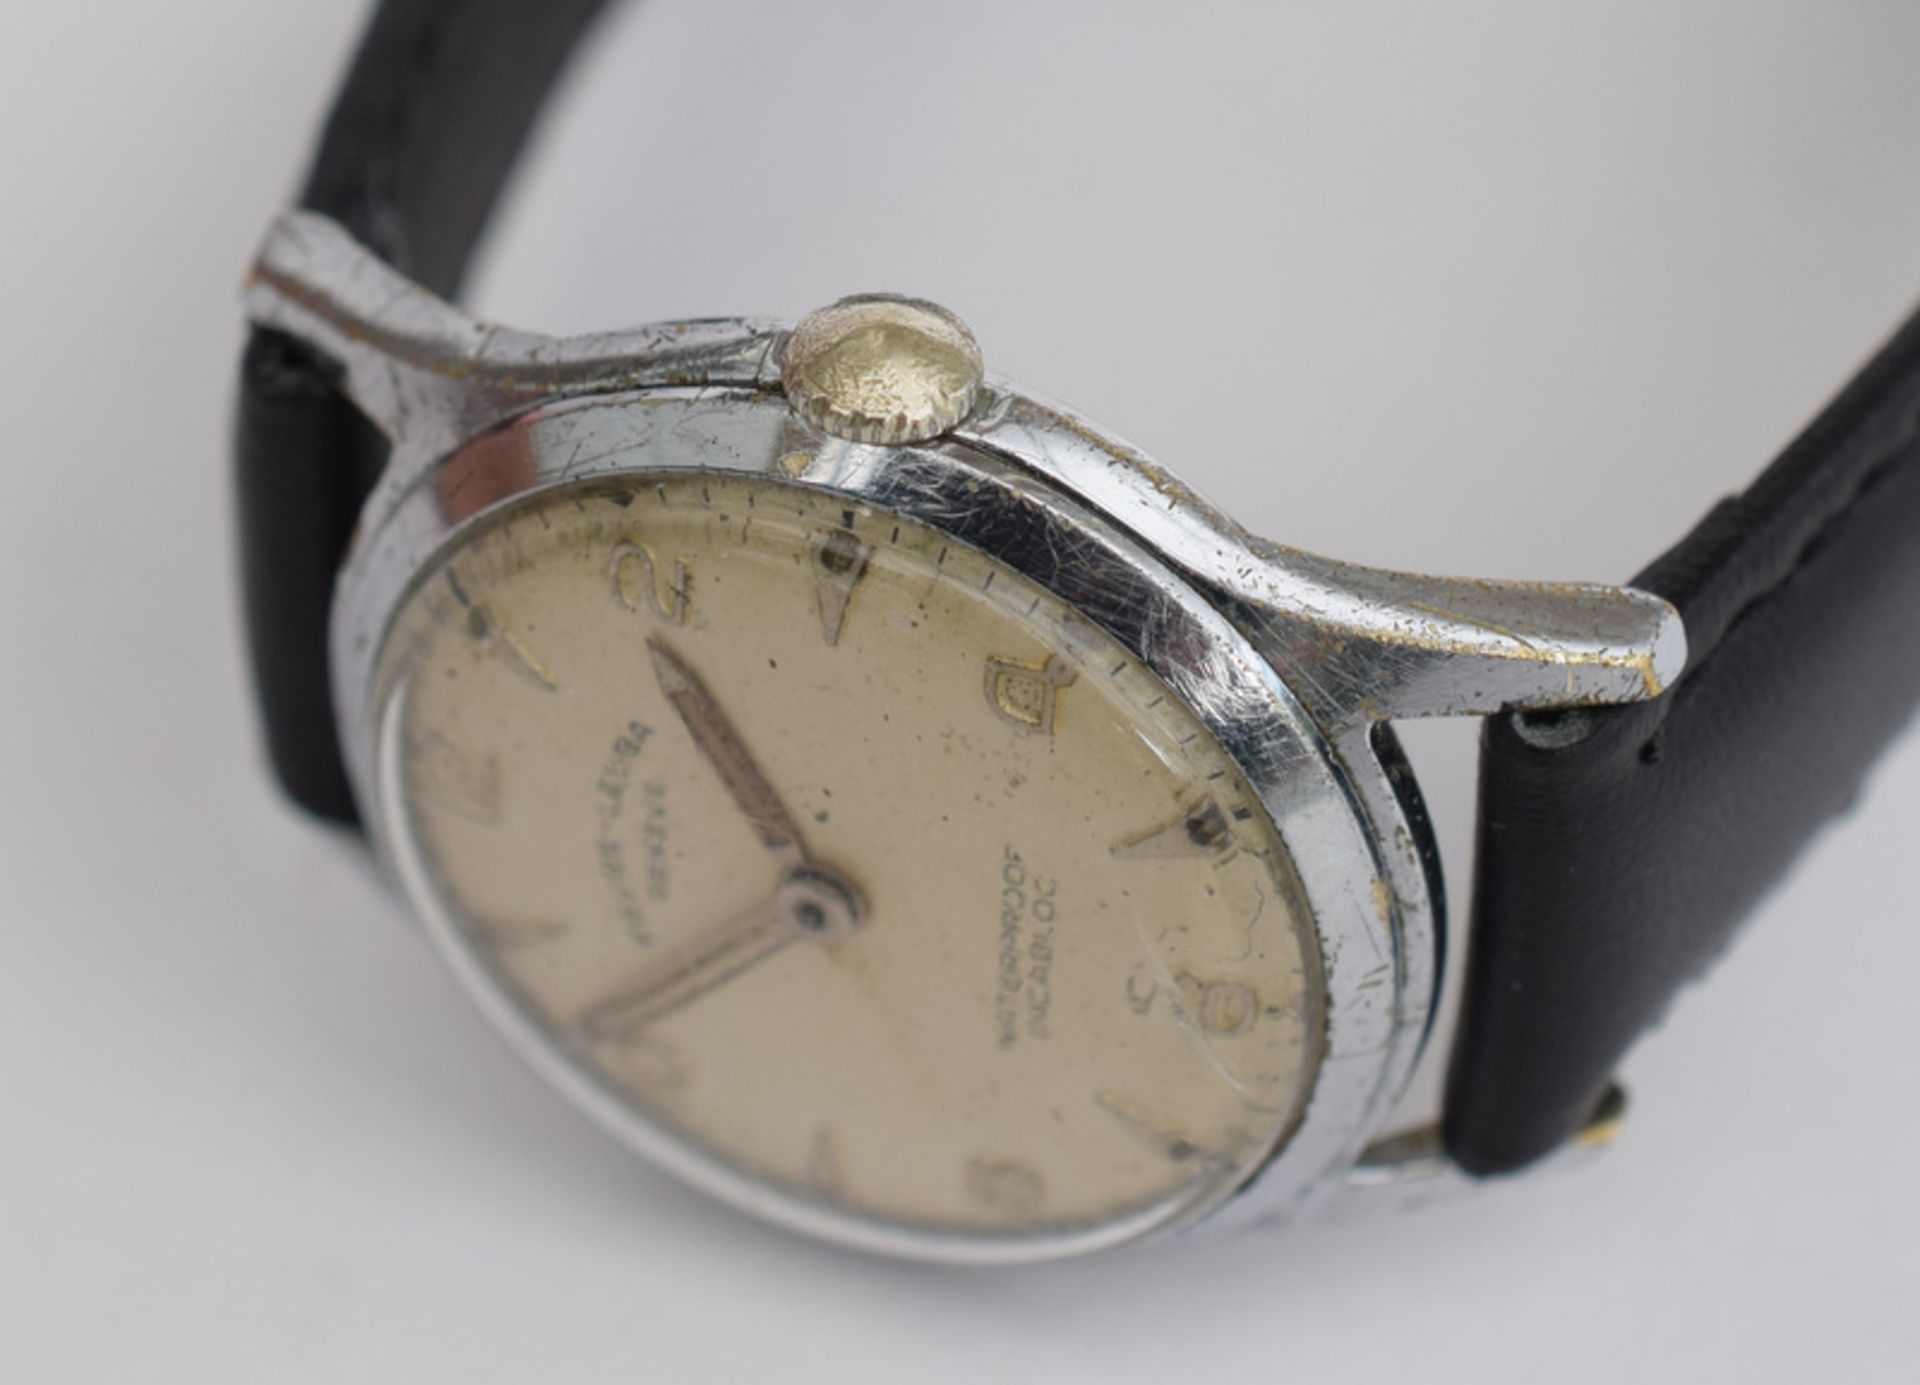 Favre Leuba Geneve Wristwatch - Image 3 of 5